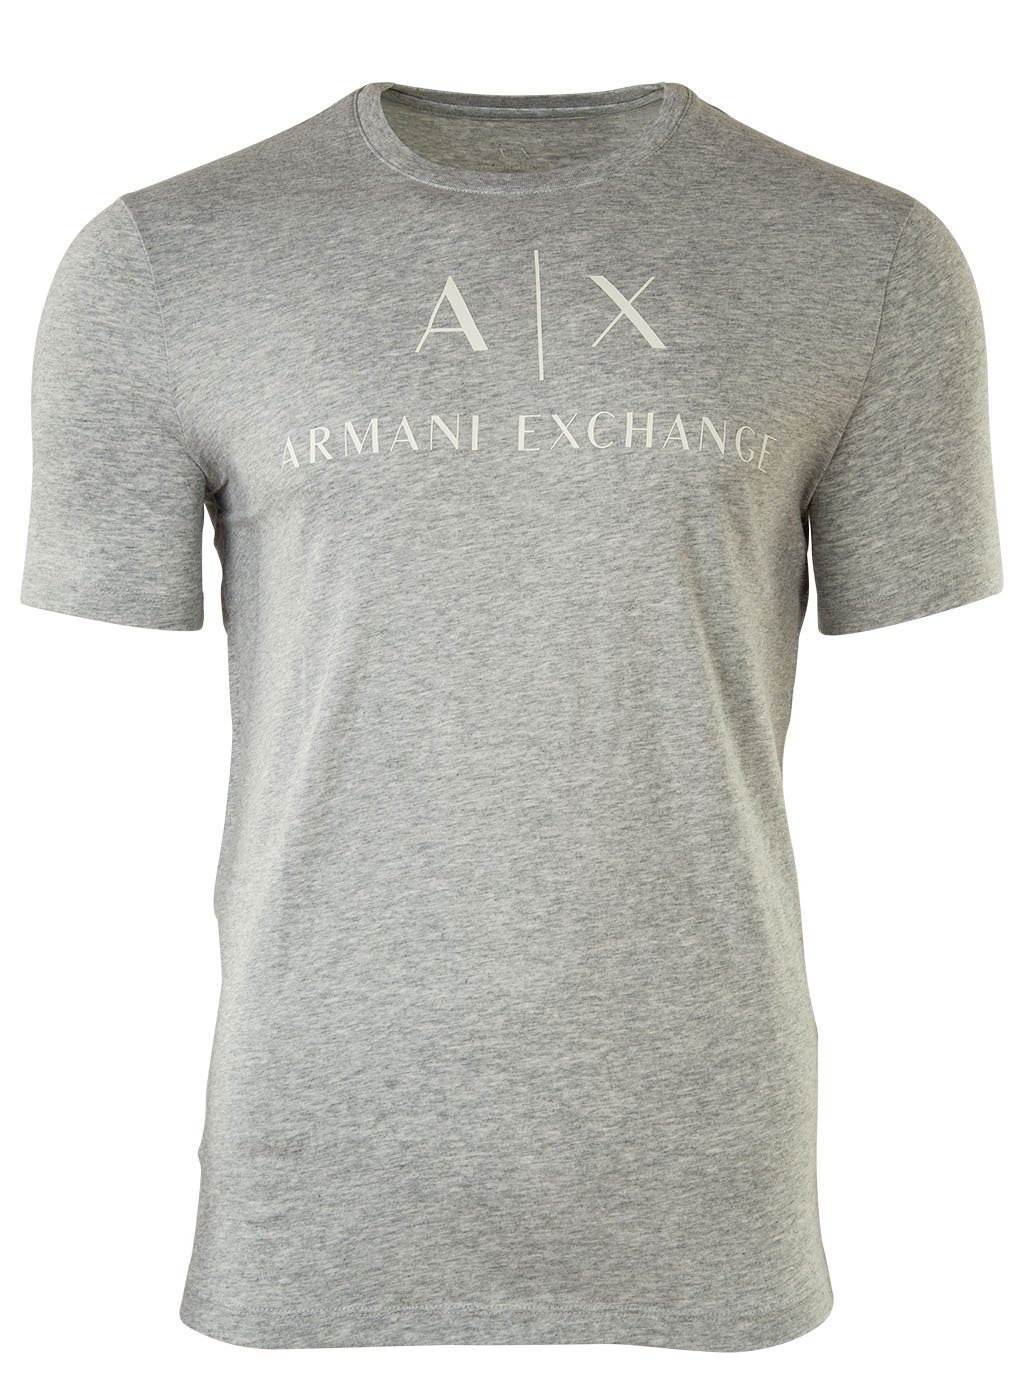 ARMANI EXCHANGE T-Shirt Herren T-Shirt - Schriftzug, Rundhals, Cotton Grau